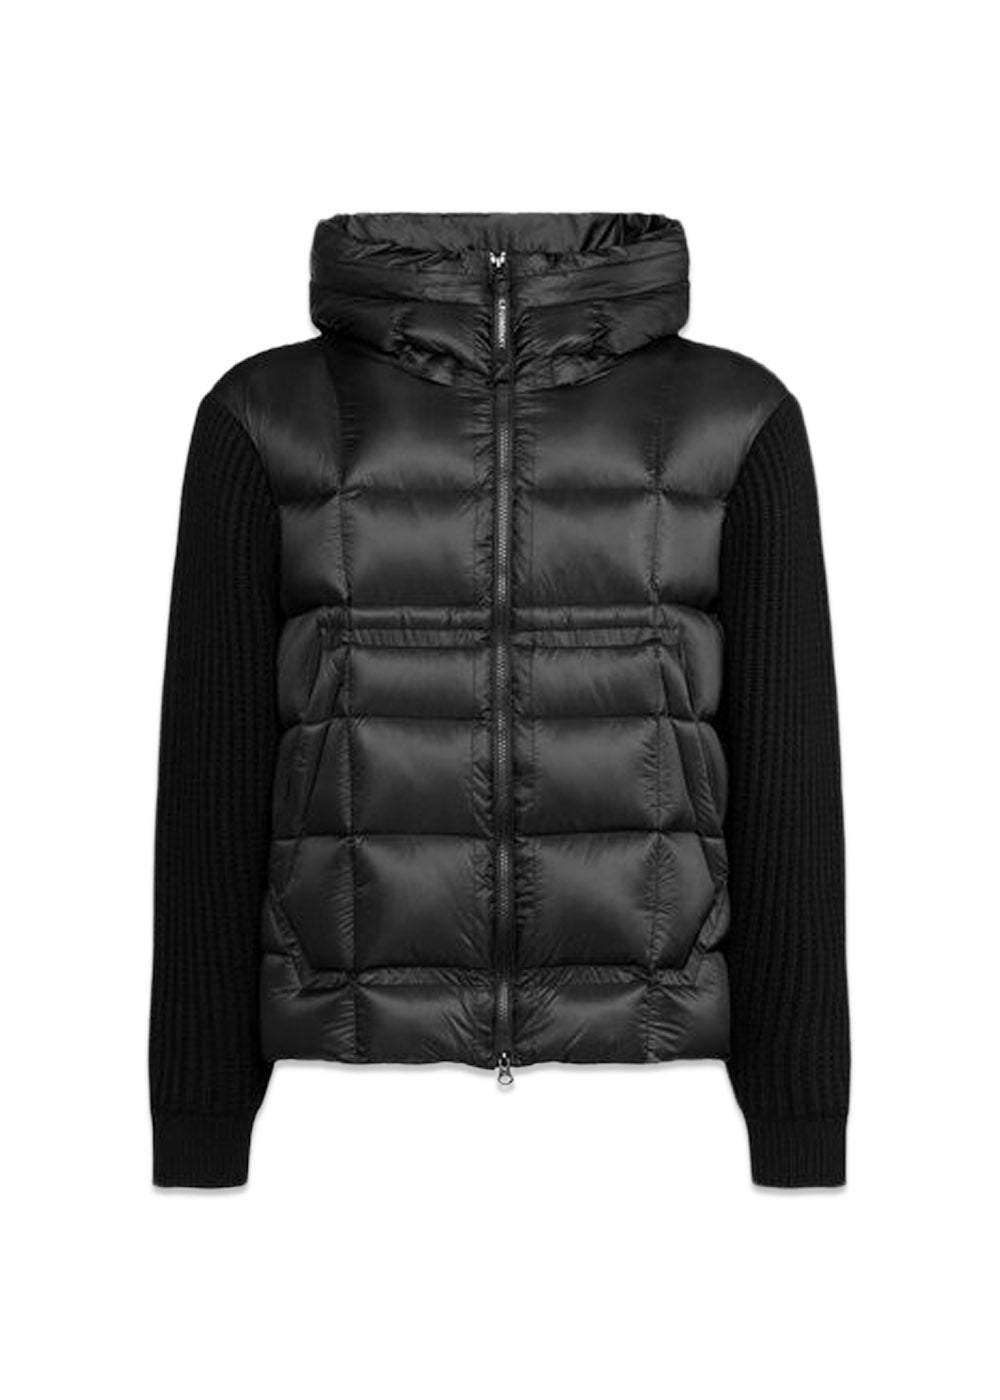 Knitwear Jacket Merino Wool Extrafine - Black